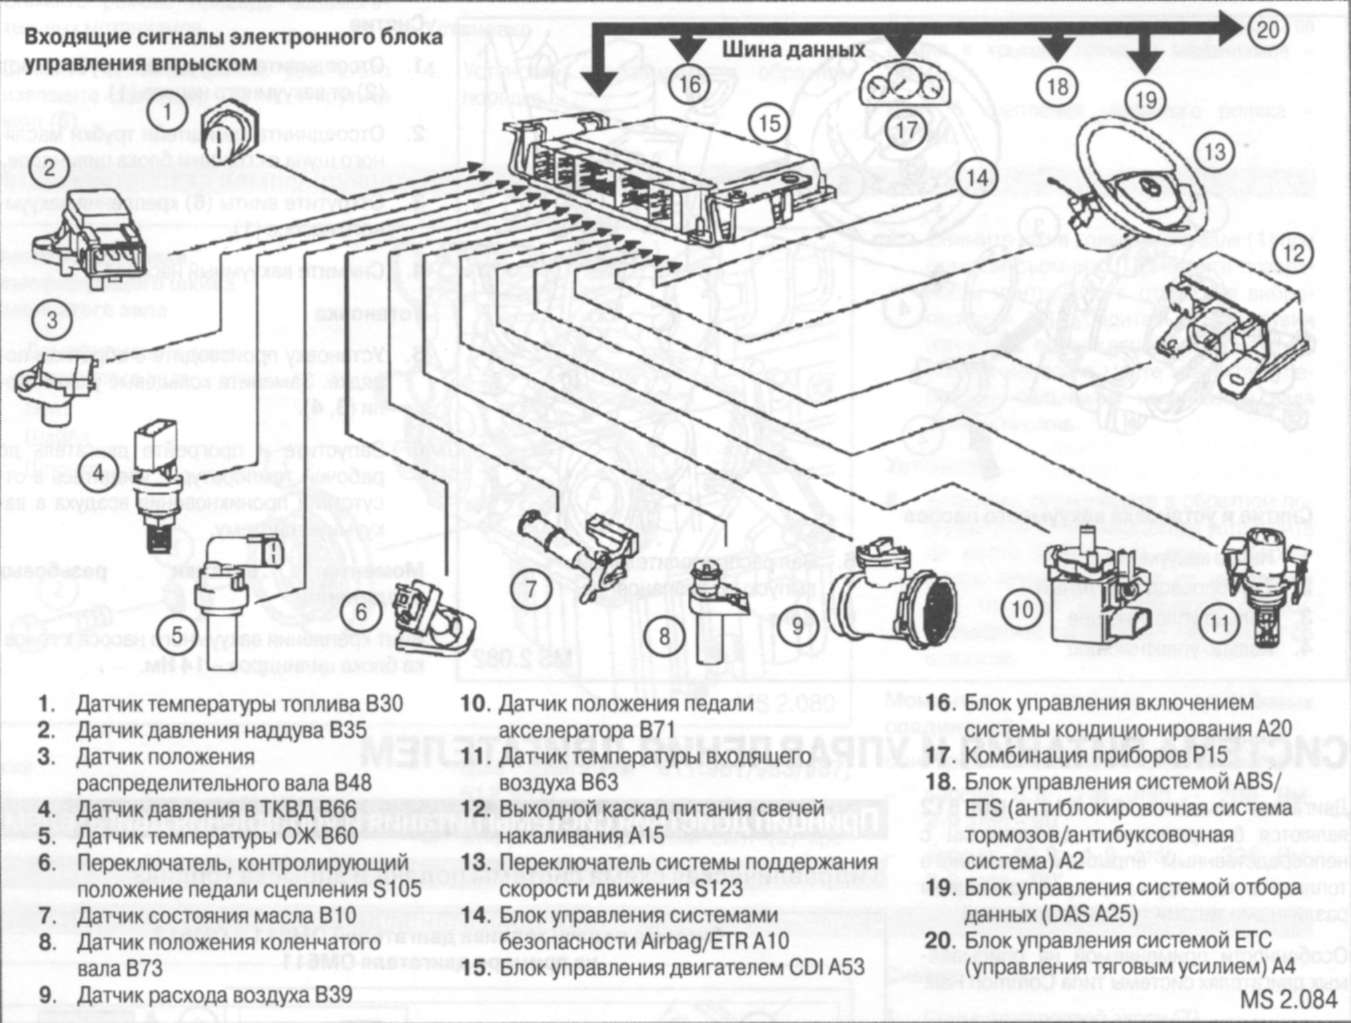 4.1.3 Функциональная схема системы управления двигателем